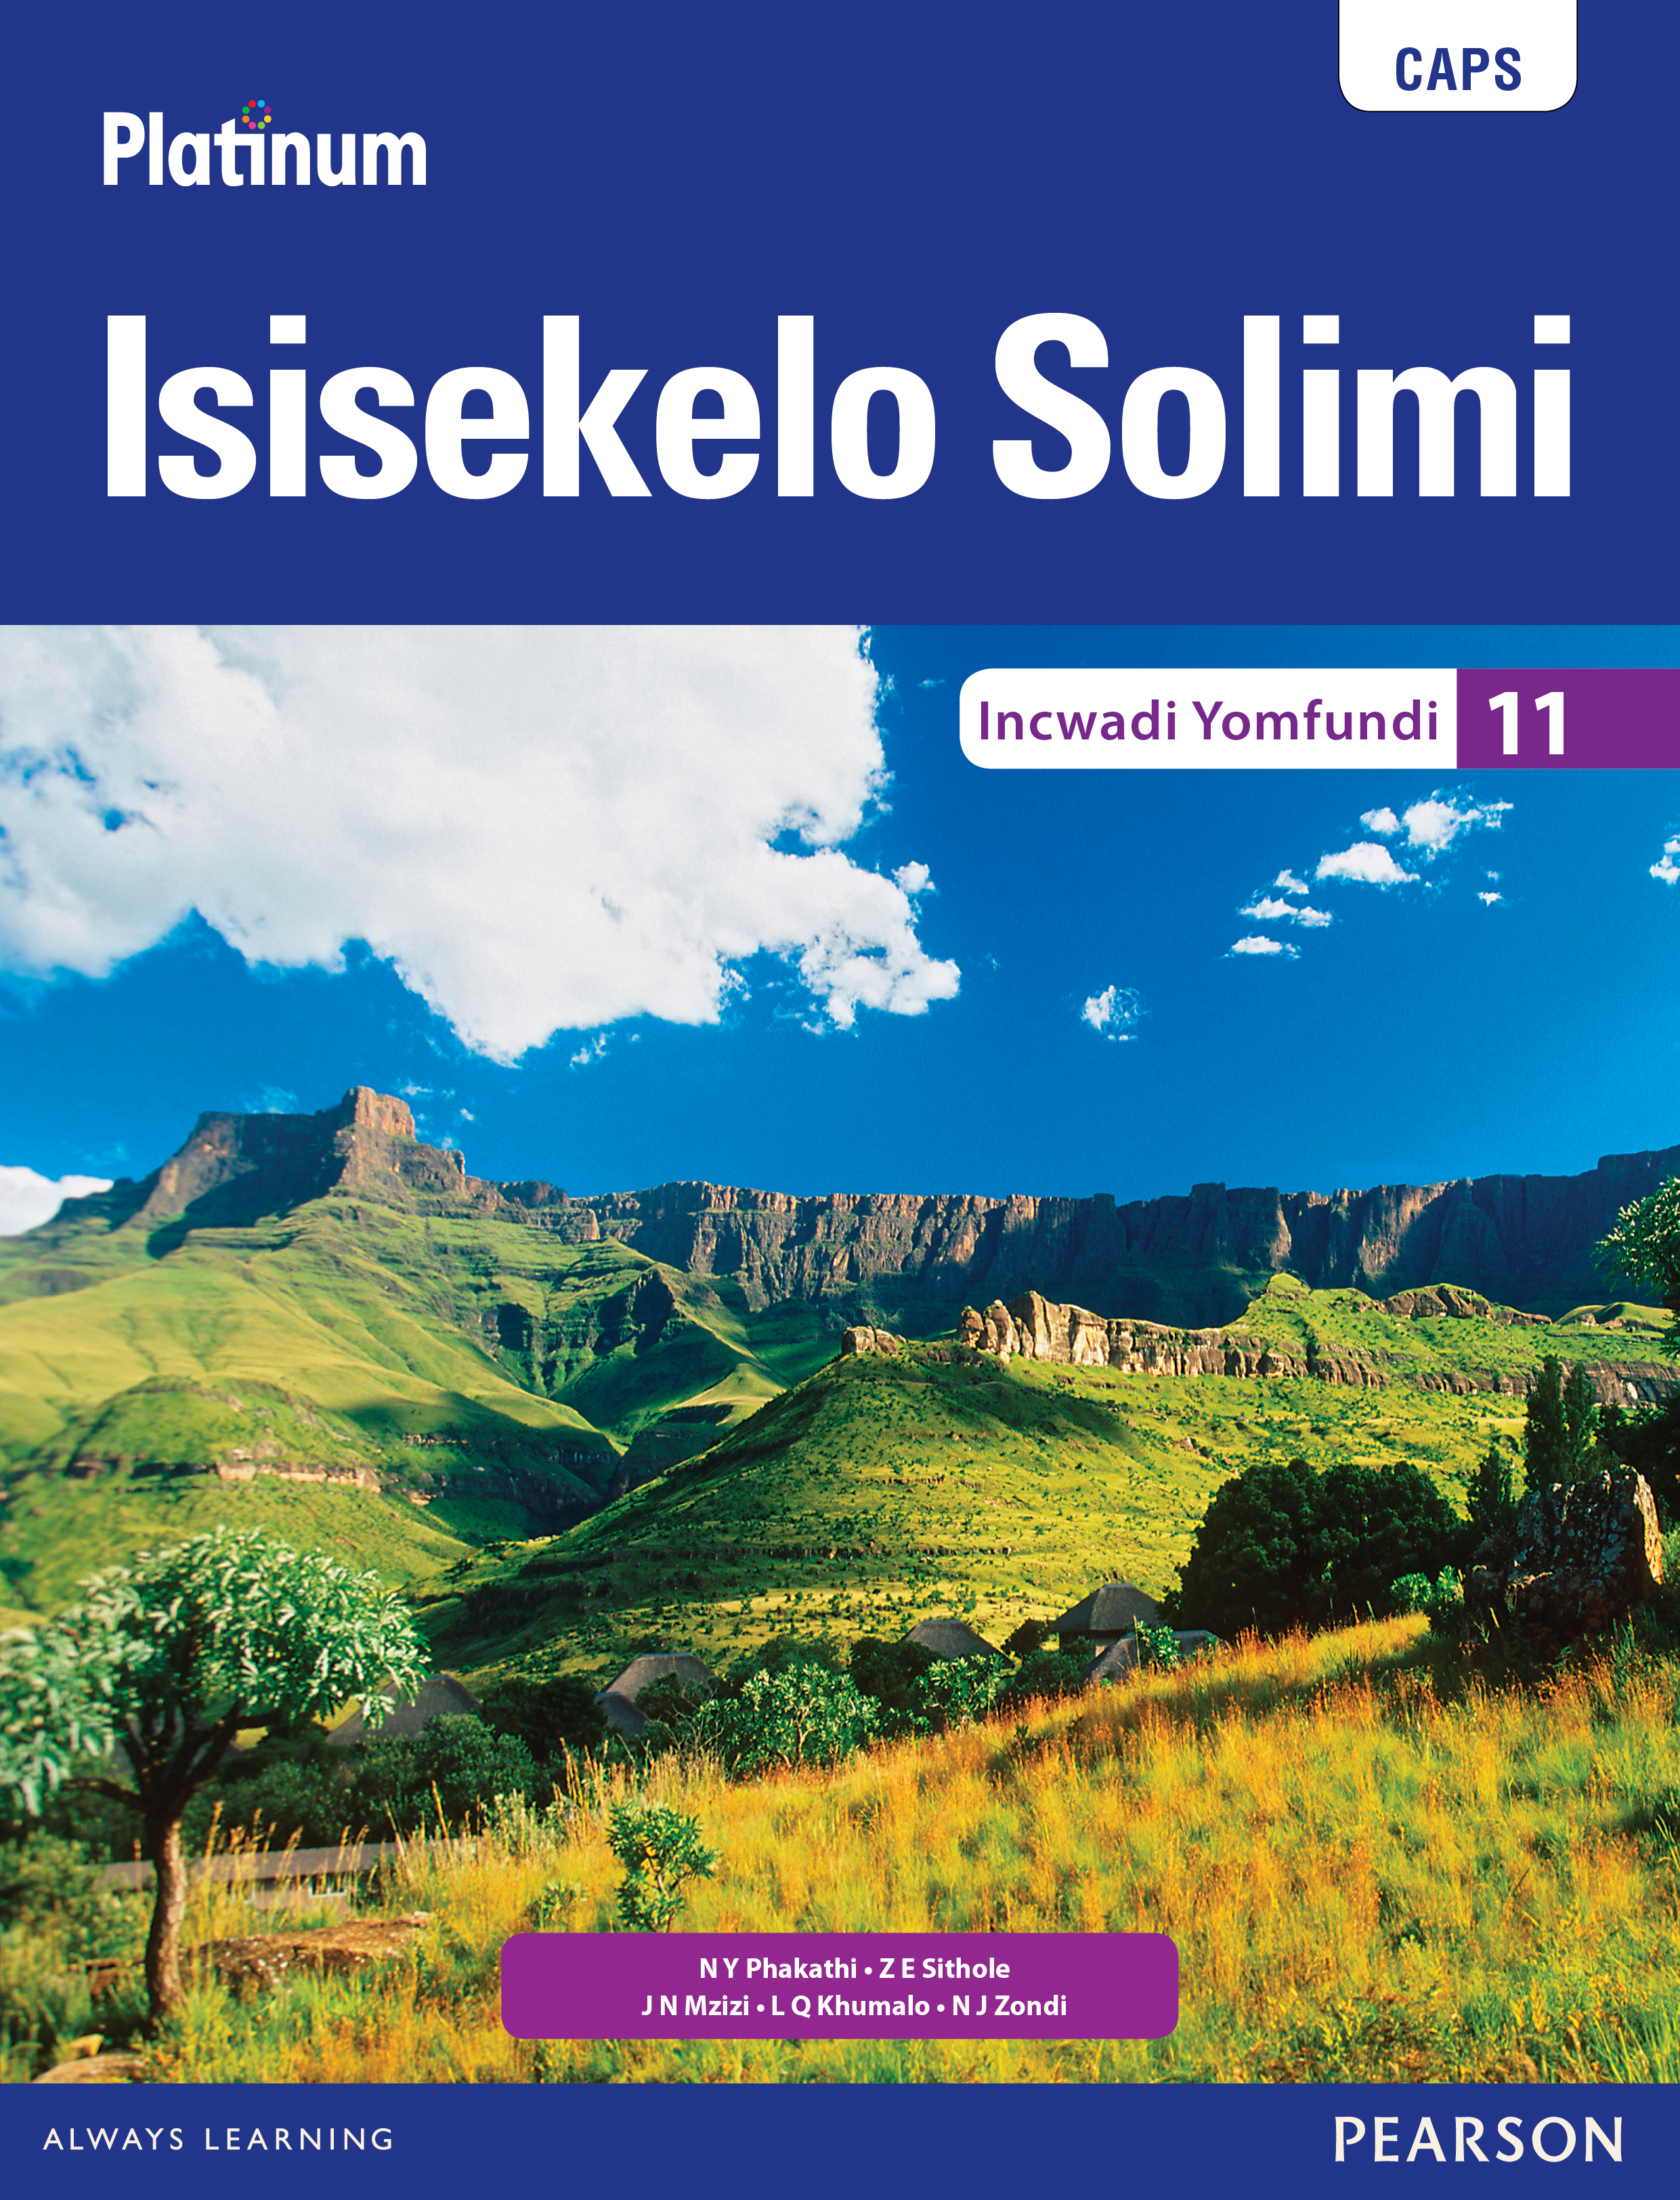 Picture of Platinum isisekelo solimi CAPS